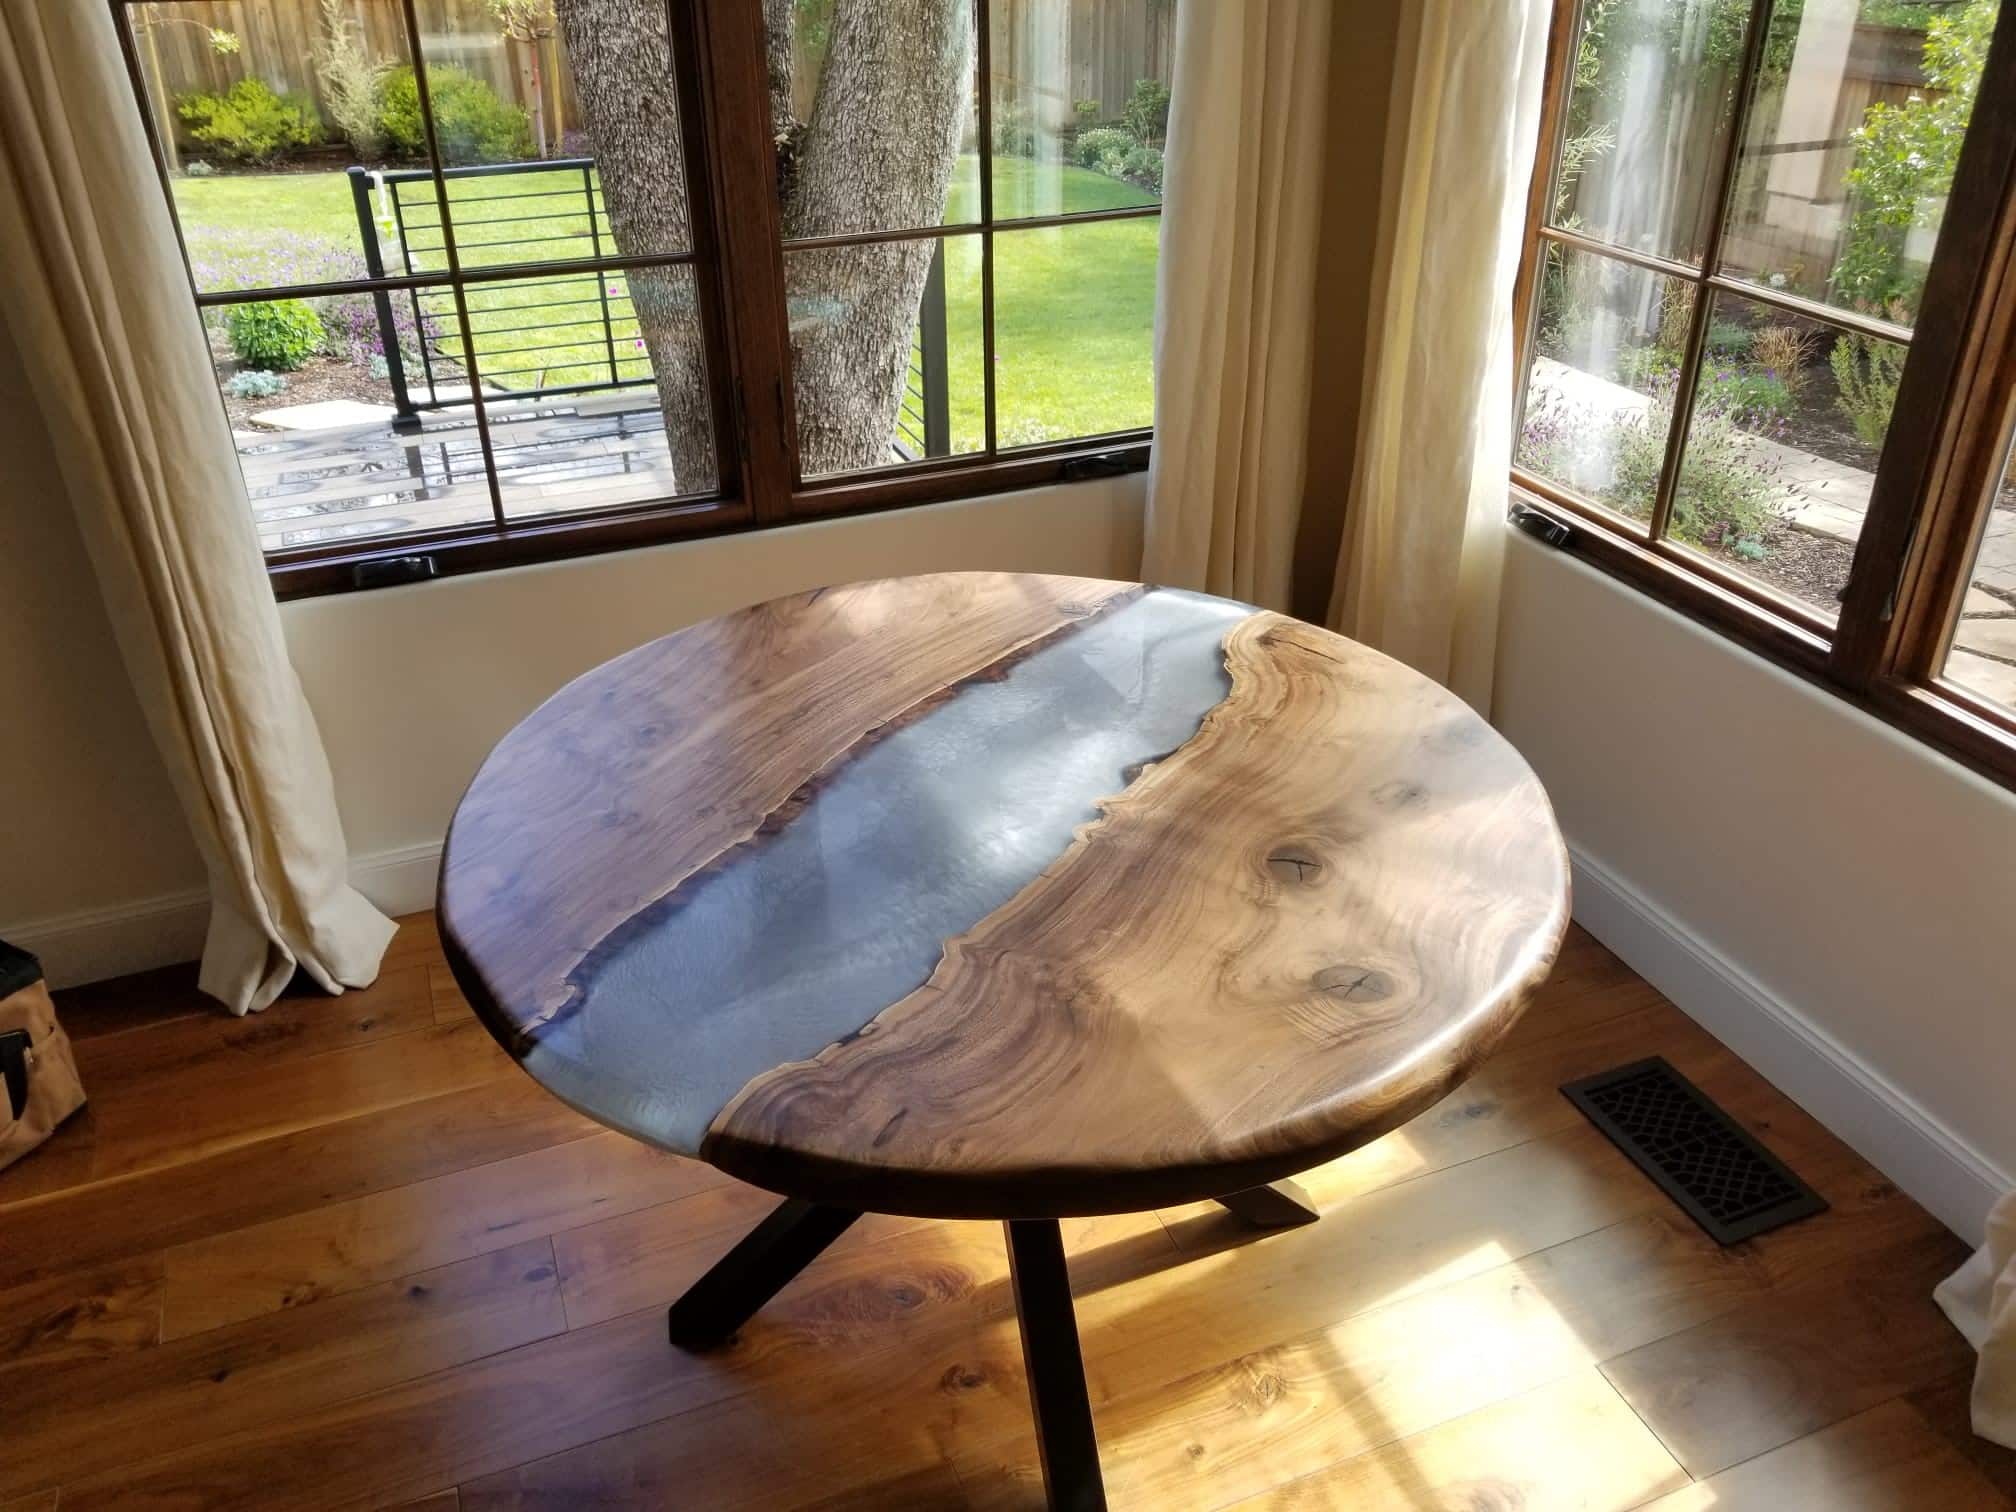 Oak Luxury Black Epoxy Table - On Wooden